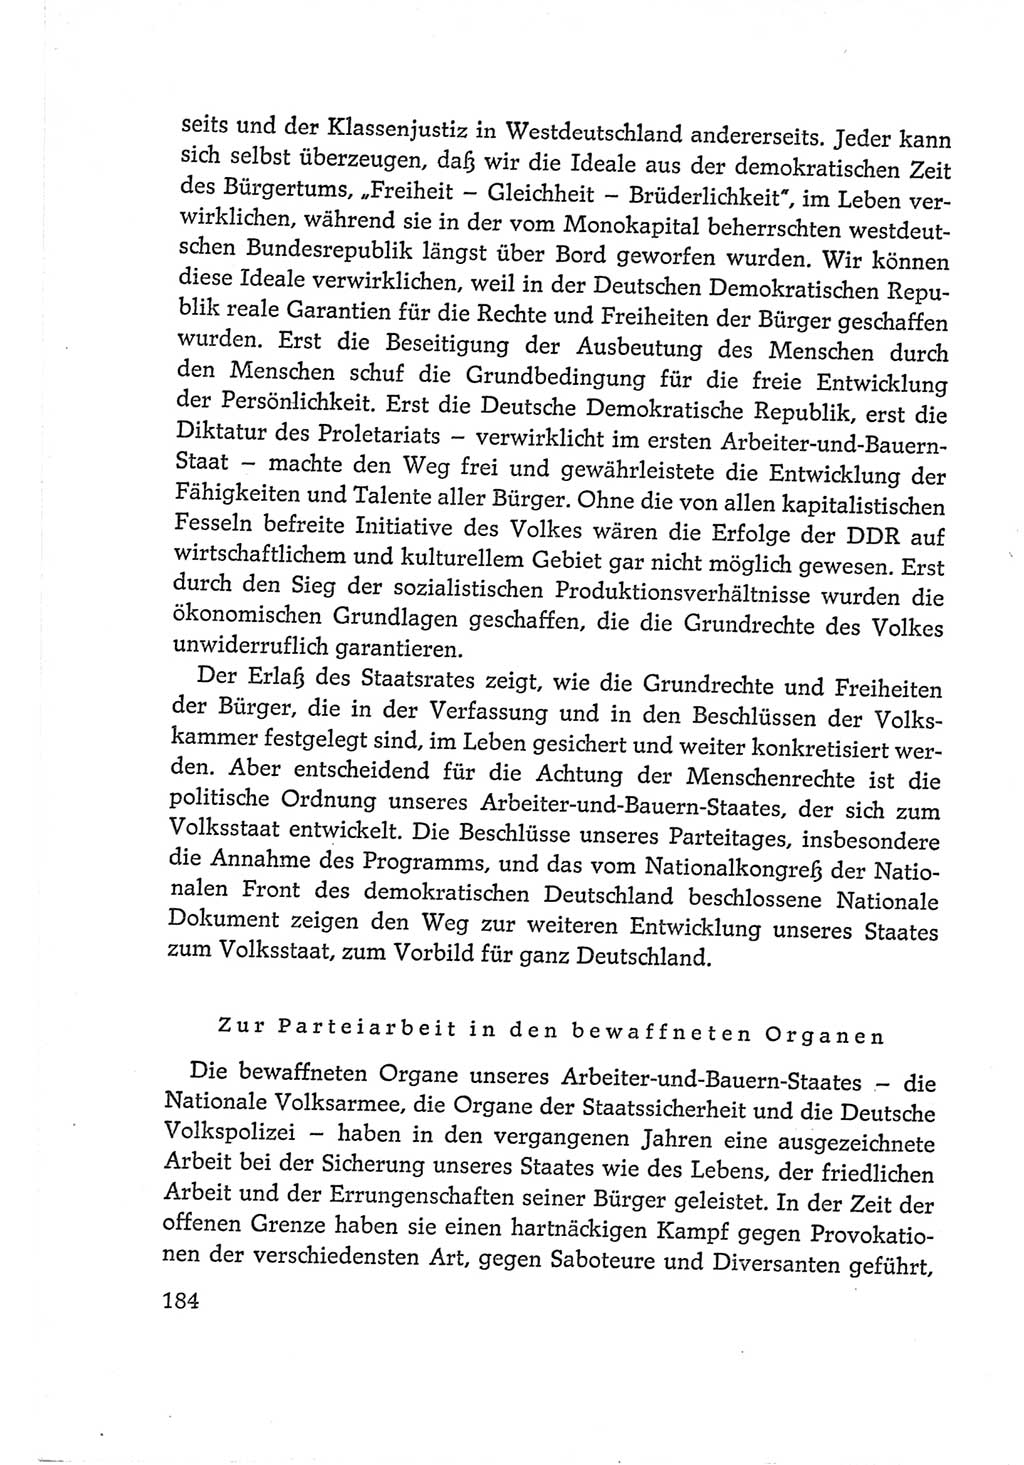 Protokoll der Verhandlungen des Ⅵ. Parteitages der Sozialistischen Einheitspartei Deutschlands (SED) [Deutsche Demokratische Republik (DDR)] 1963, Band Ⅰ, Seite 184 (Prot. Verh. Ⅵ. PT SED DDR 1963, Bd. Ⅰ, S. 184)